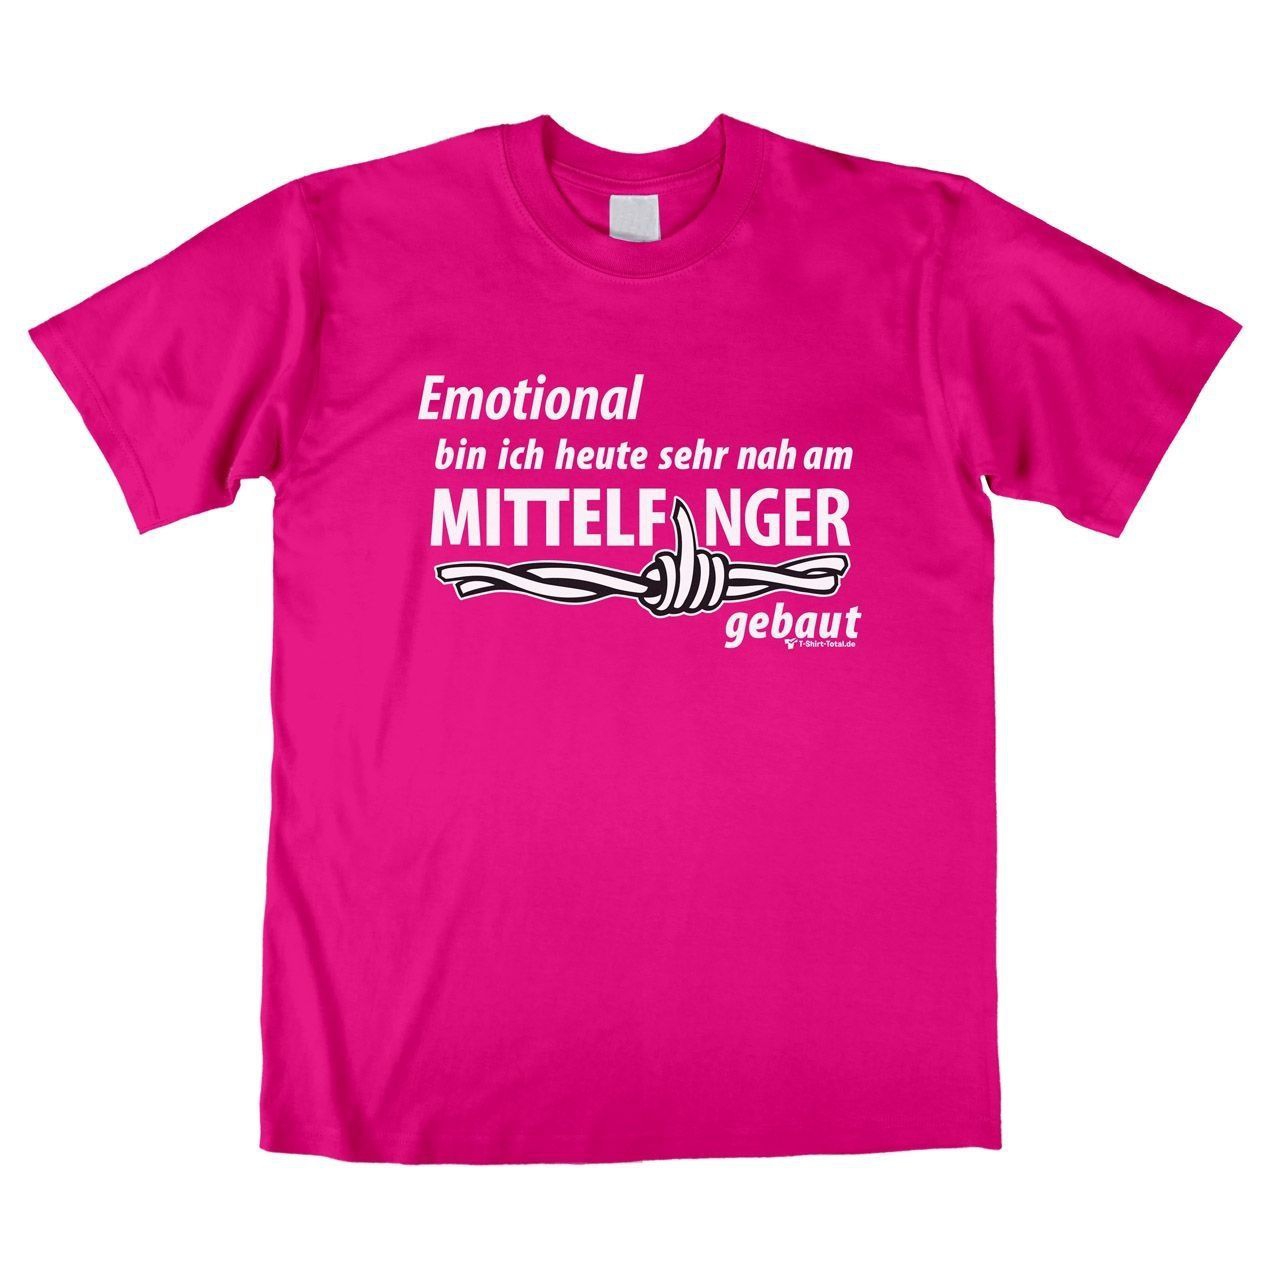 Mittelfinger Unisex T-Shirt pink Extra Large